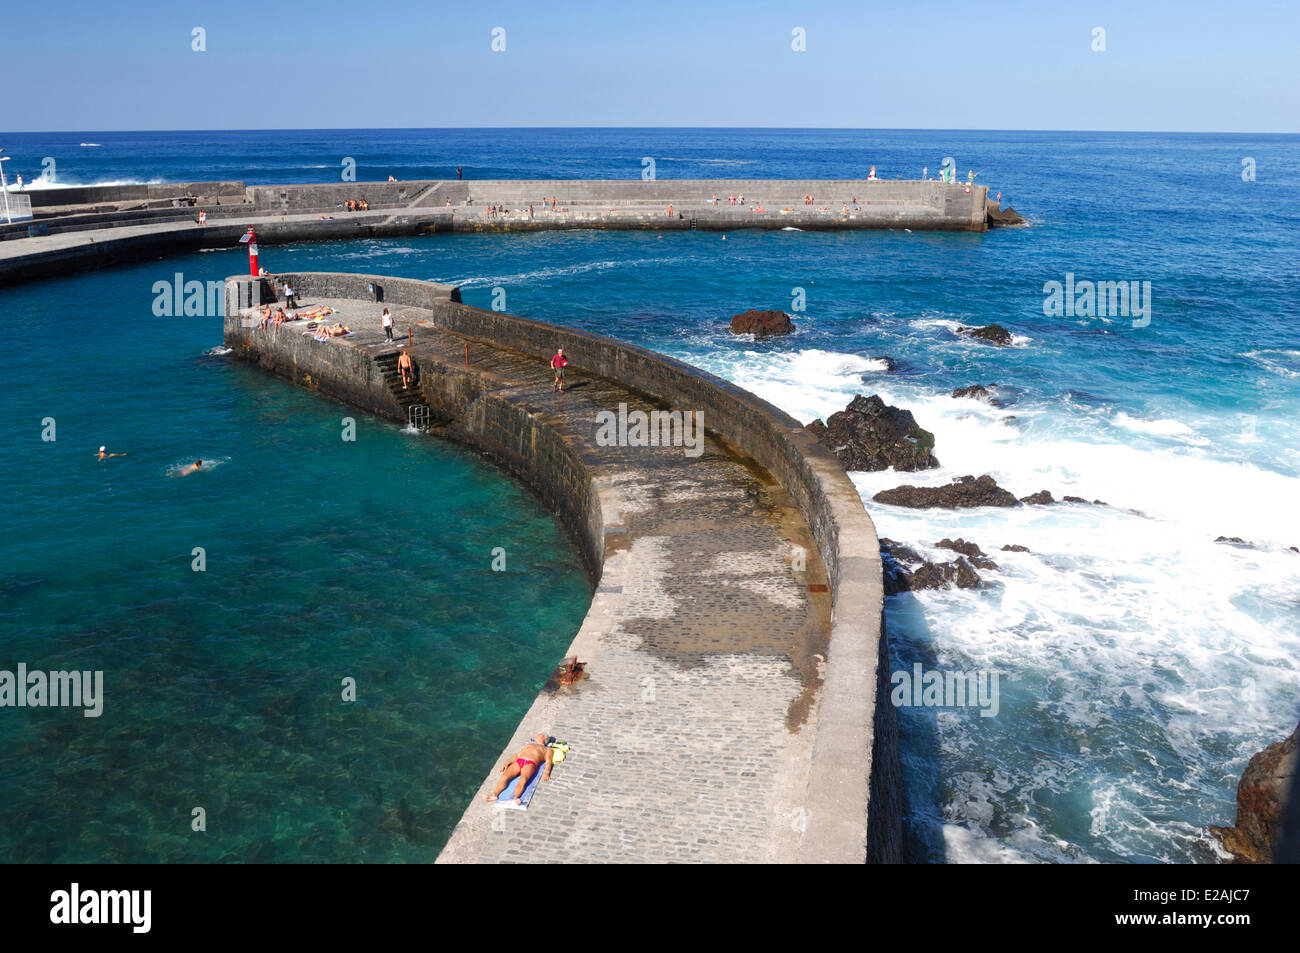 L'Espagne, Iles Canaries, Tenerife, Puerto de la Cruz, port de la ville Banque D'Images